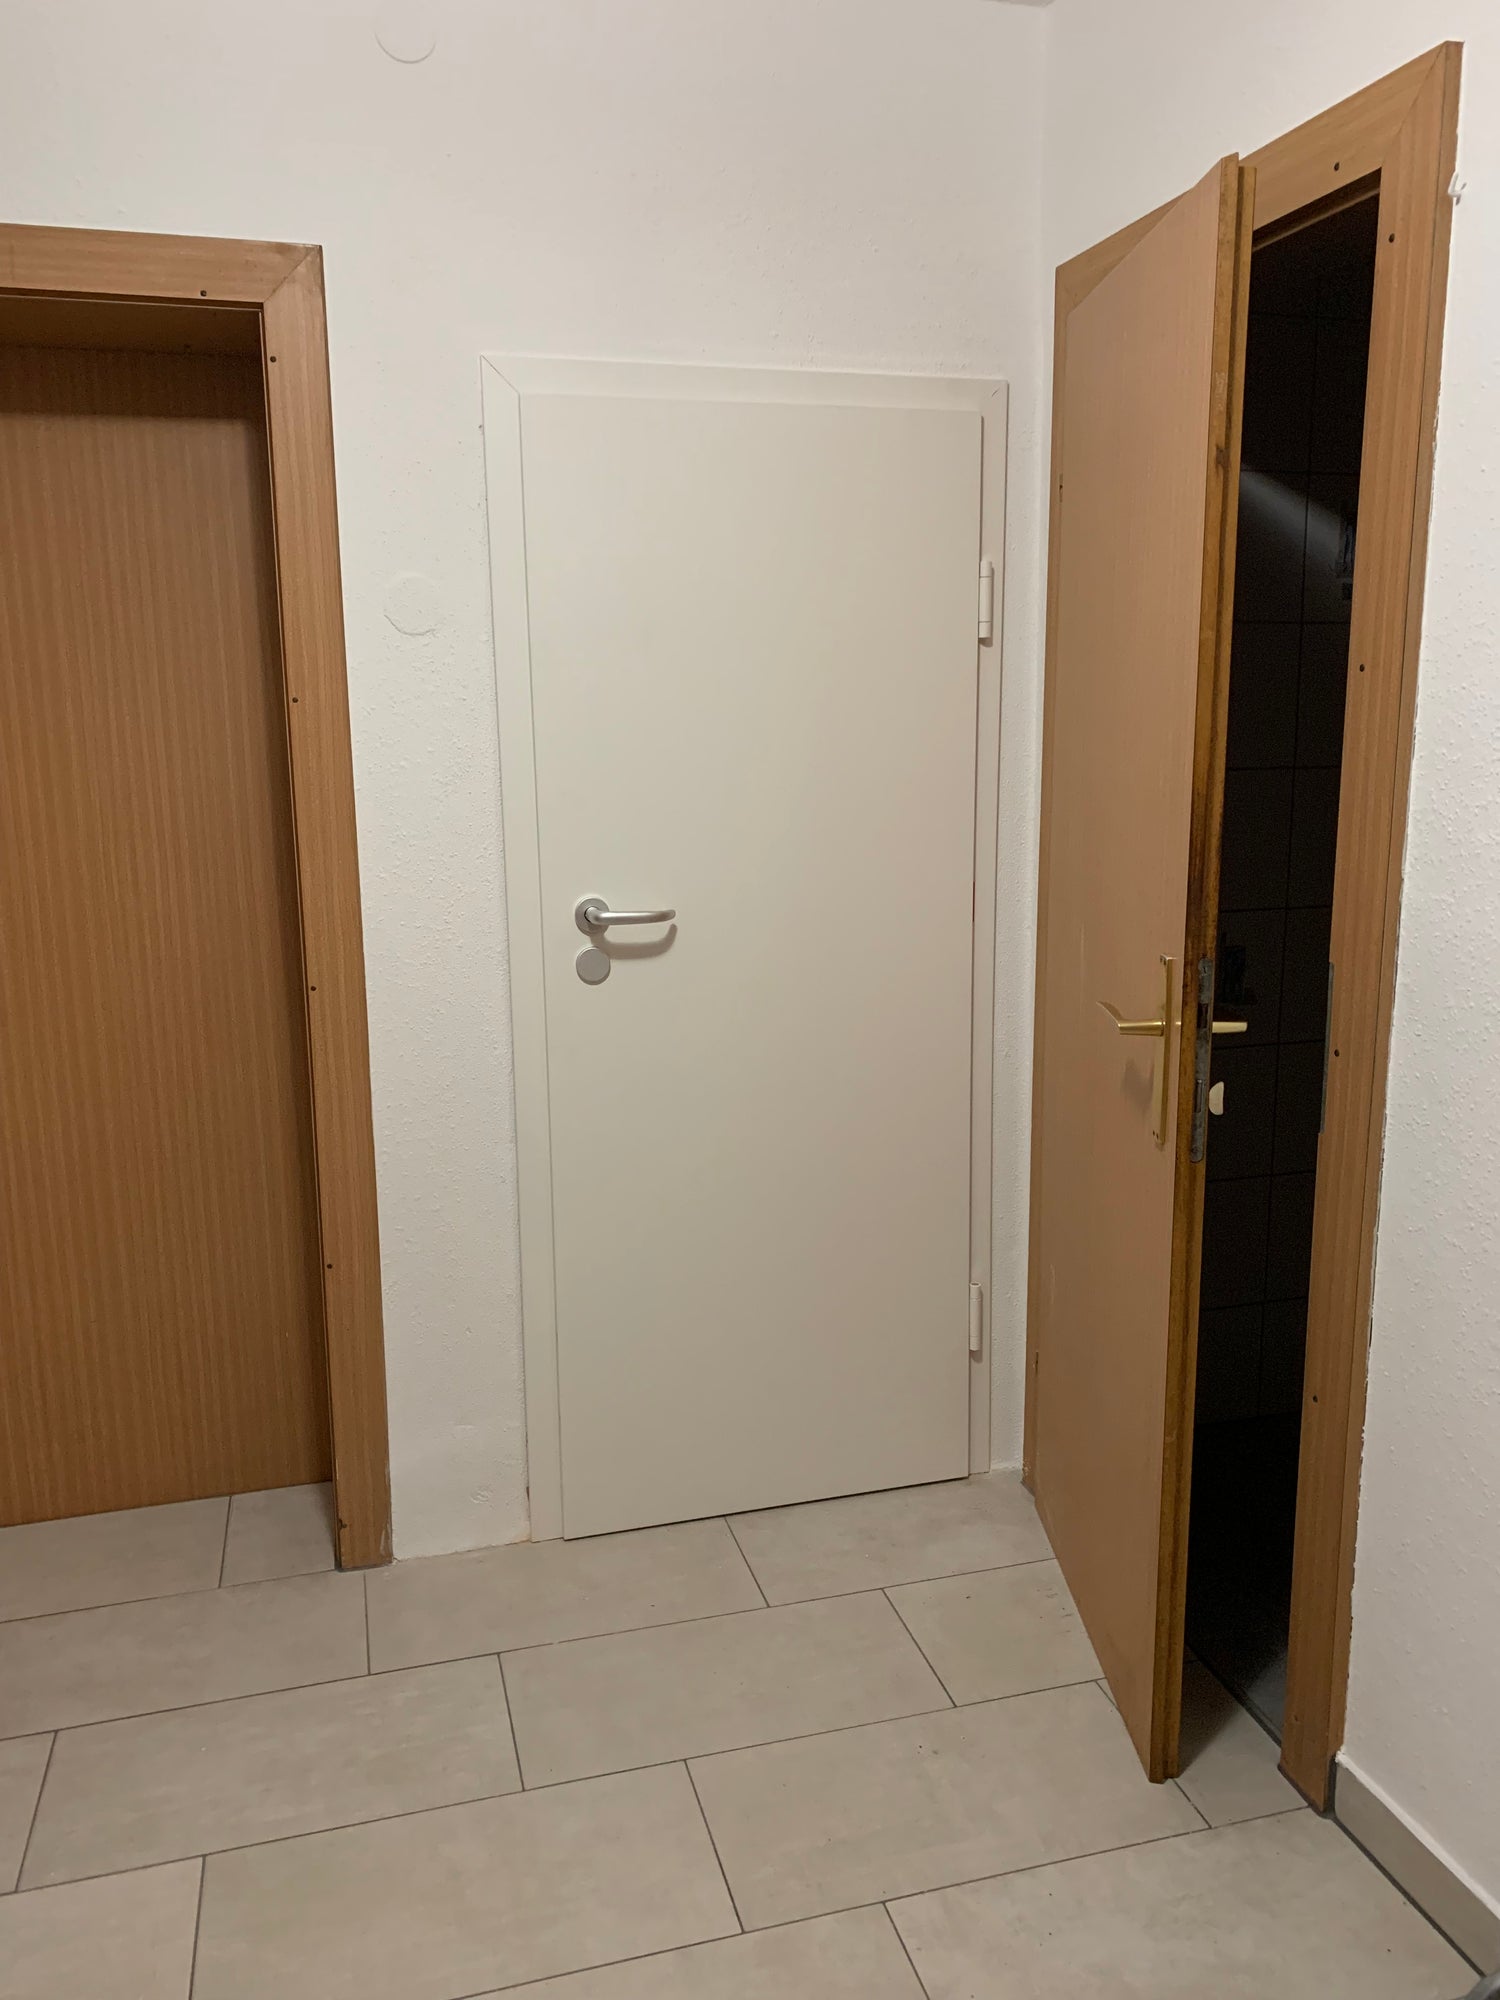 Kellertür / Stahltür in der Farbe Reinweiß - Qualität aus Österreich